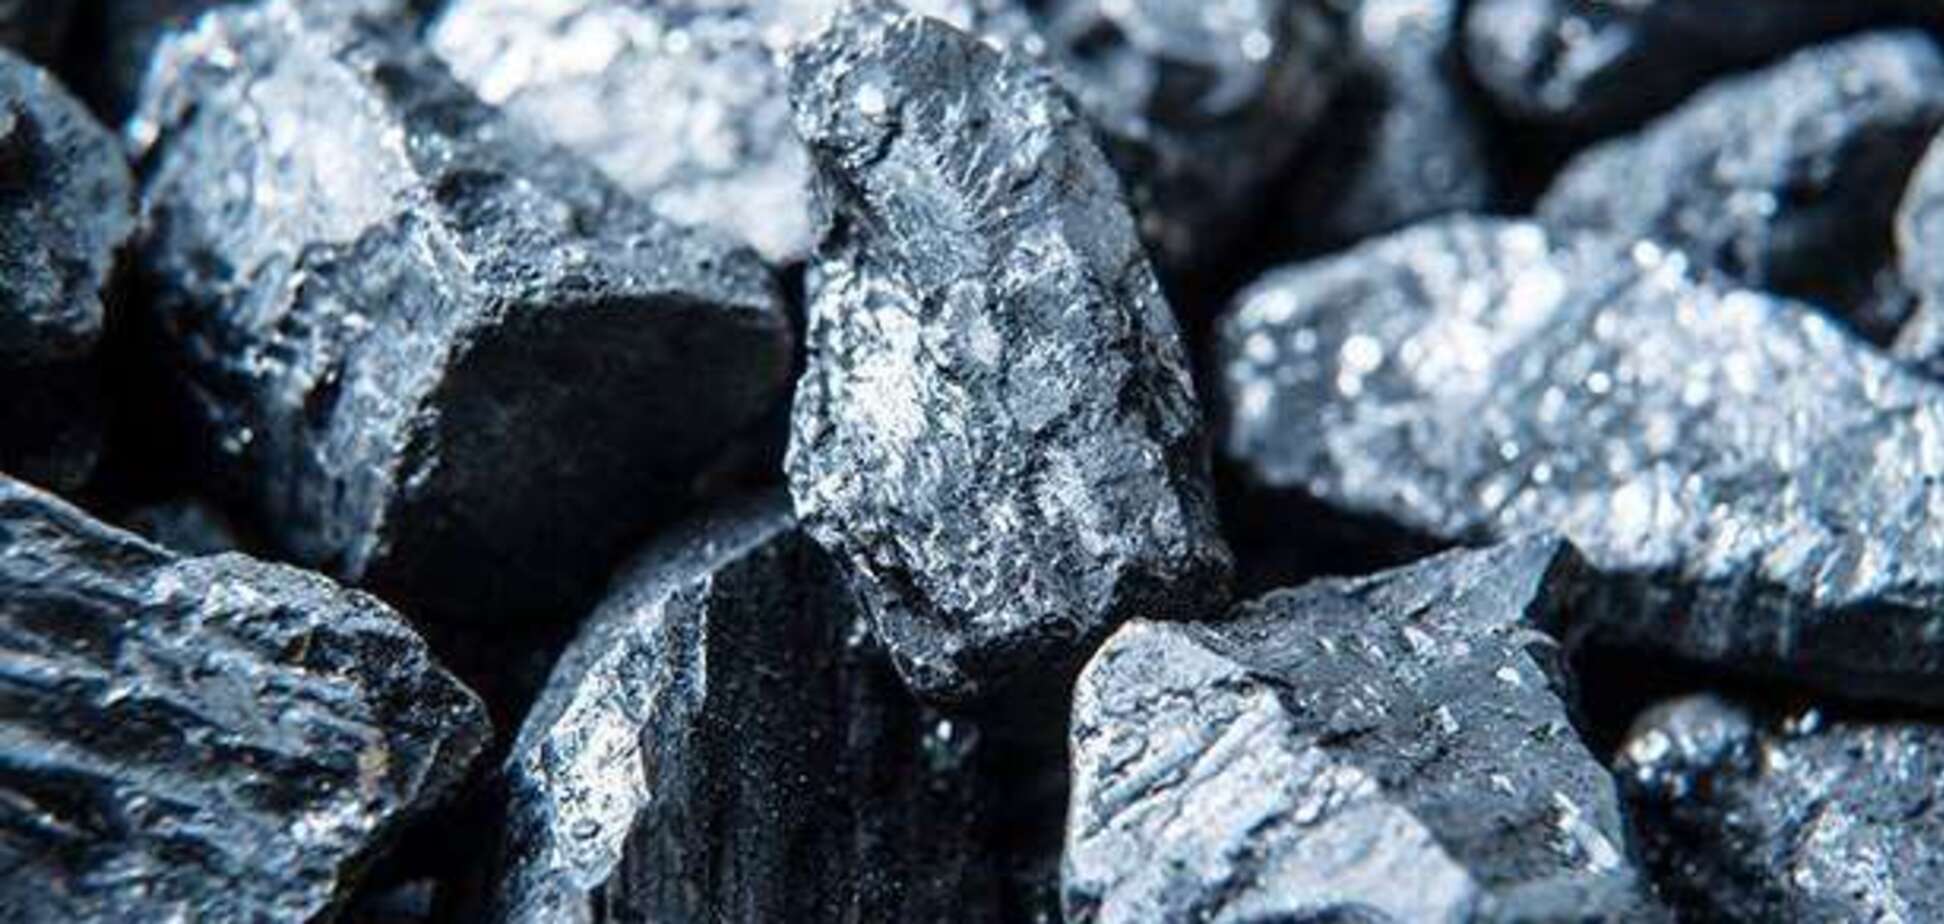 Попри величезні поклади вугілля, Україна планує збільшити імпорт вугілля з РФ – експерт РПР